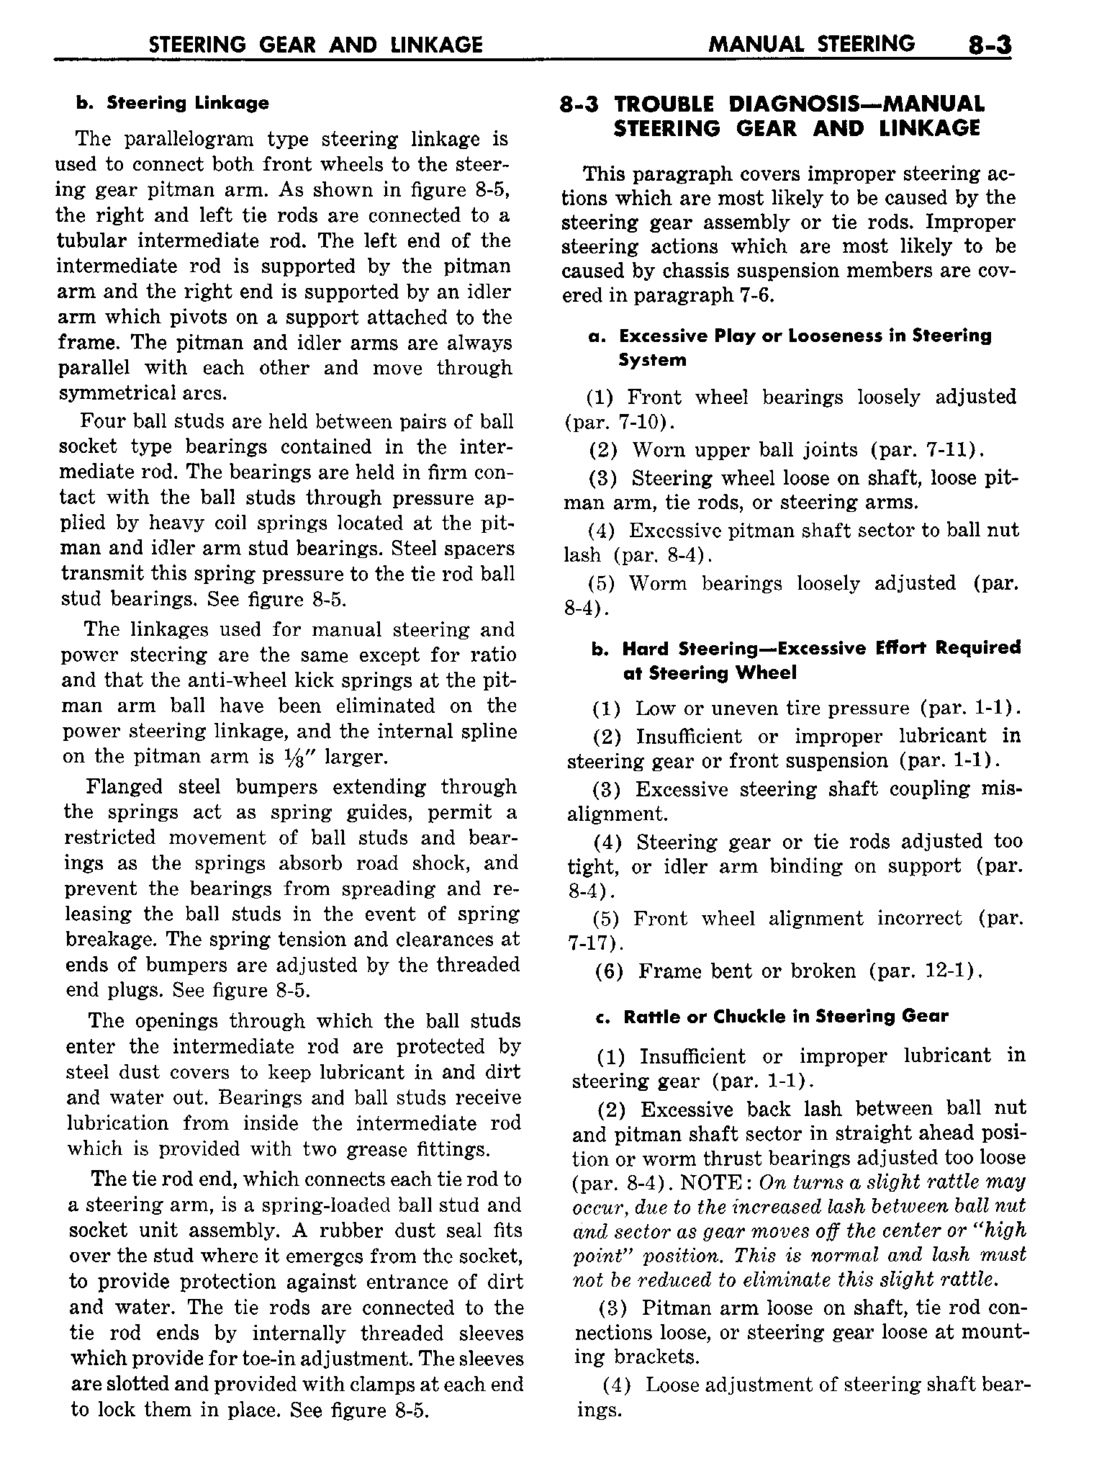 n_09 1960 Buick Shop Manual - Steering-003-003.jpg